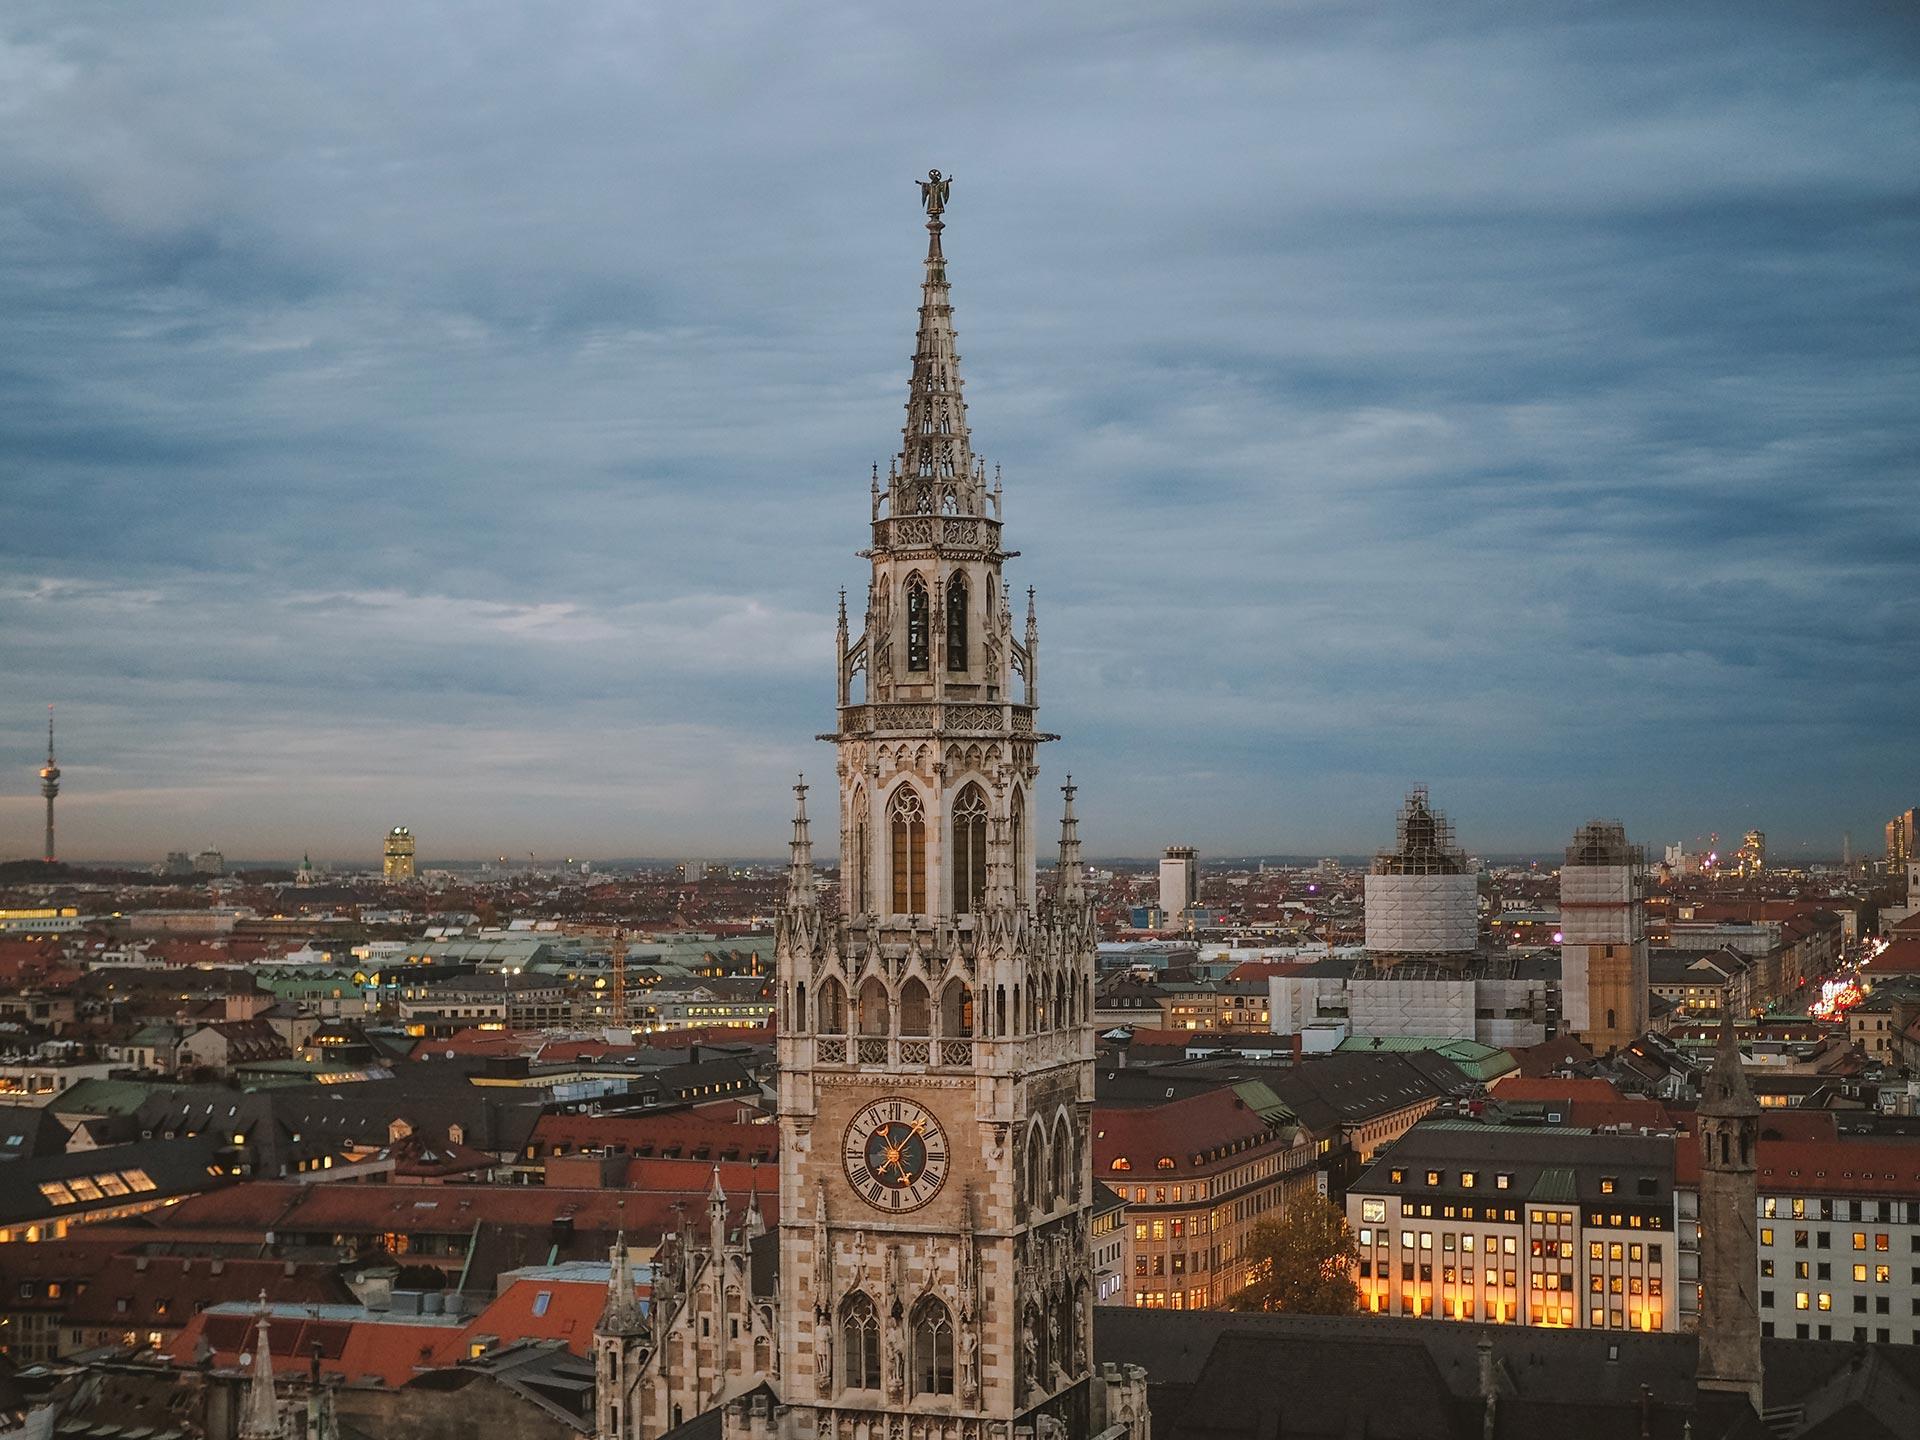 City of Munich